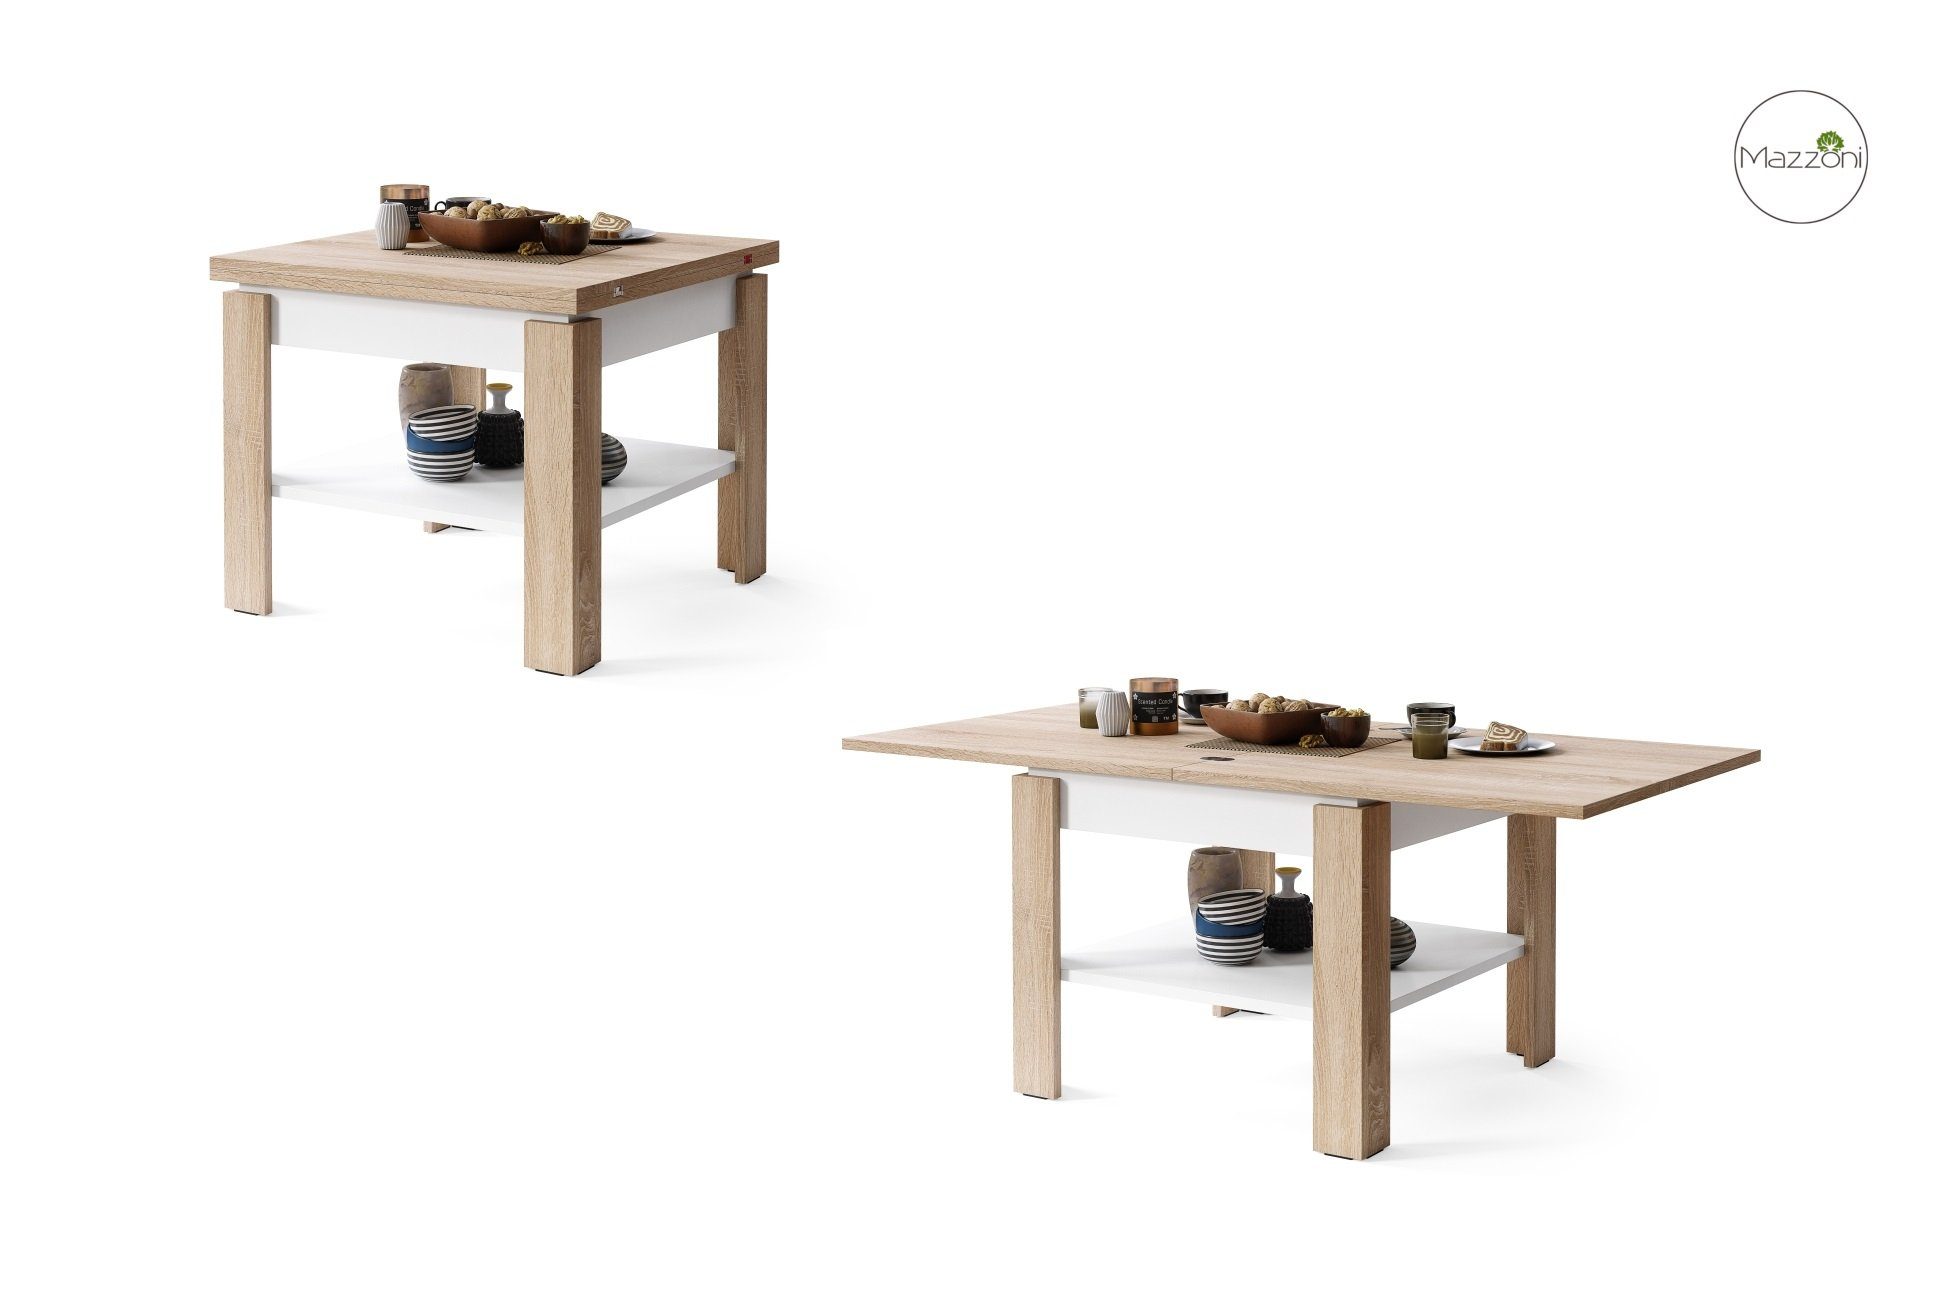 - Eiche Weiß Eiche Tisch matt aufklappbar Sonoma Weiß Leo 130cm / - matt Couchtisch 65 Design Sonoma Mazzoni